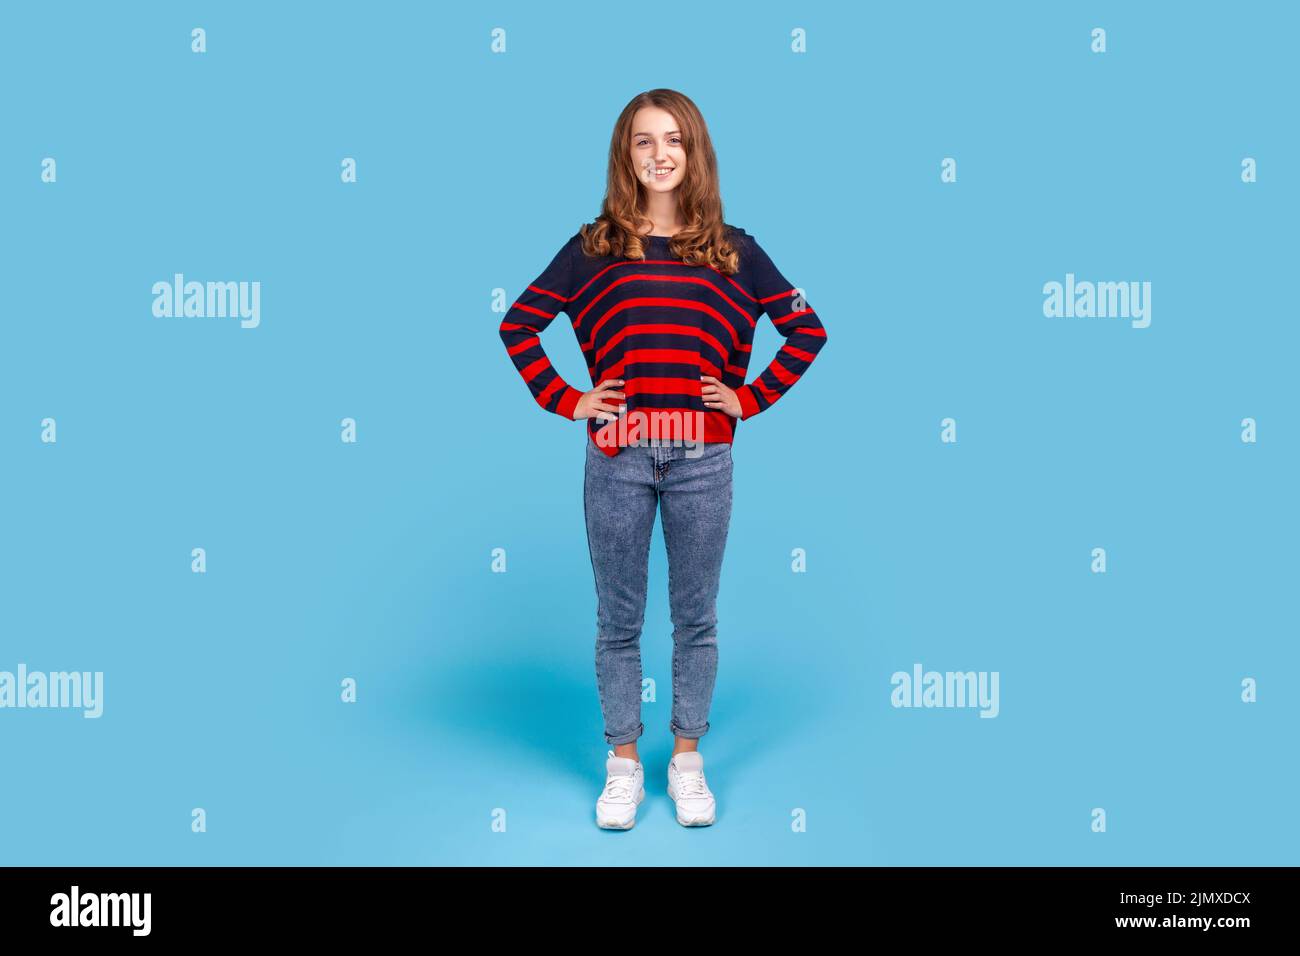 Retrato completo de una mujer feliz positiva con jersey de rayas y jeans de pie con las manos en las caderas mirando a la cámara. Estudio de interior aislado sobre fondo azul. Foto de stock